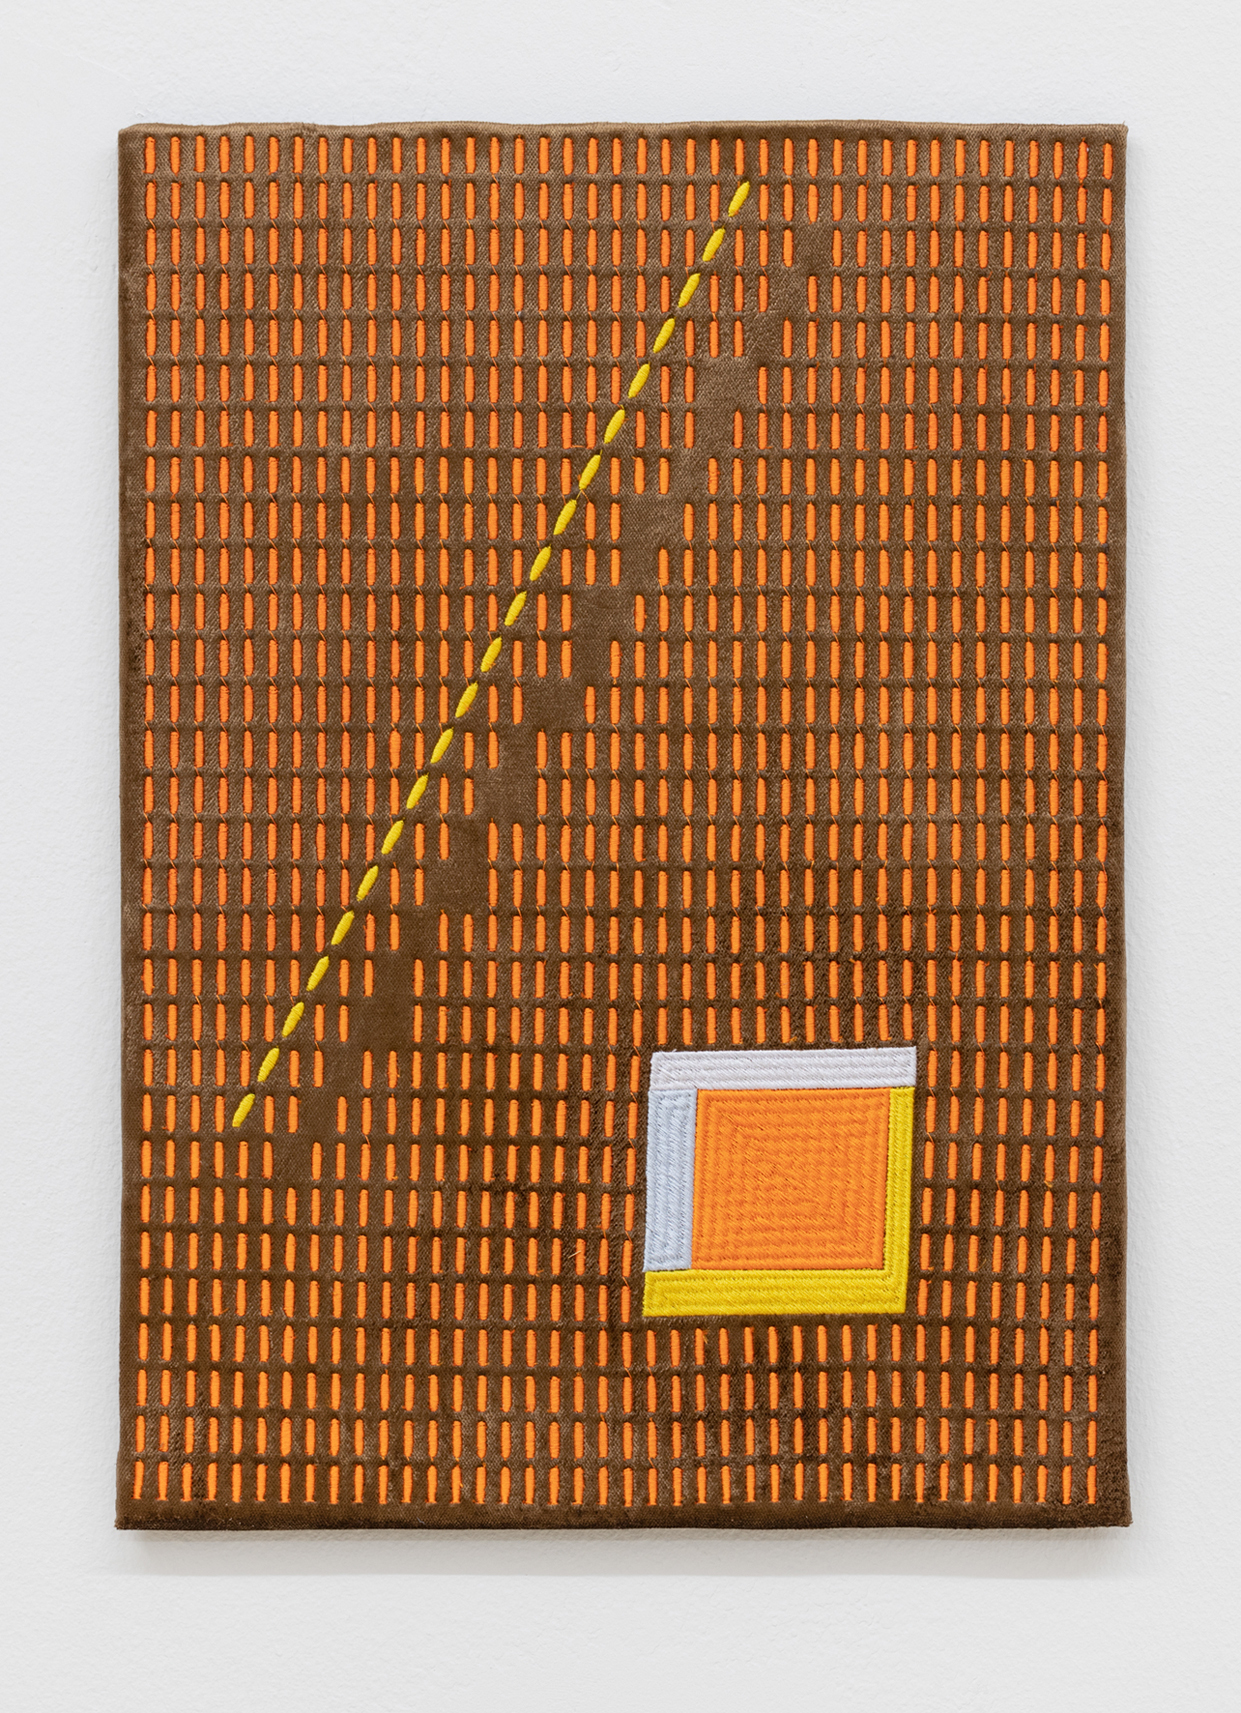 Ernst Markus Stein, einfache zigarette, 2020, Embroidery on velvet, 29,5 cm x 40,5 cm